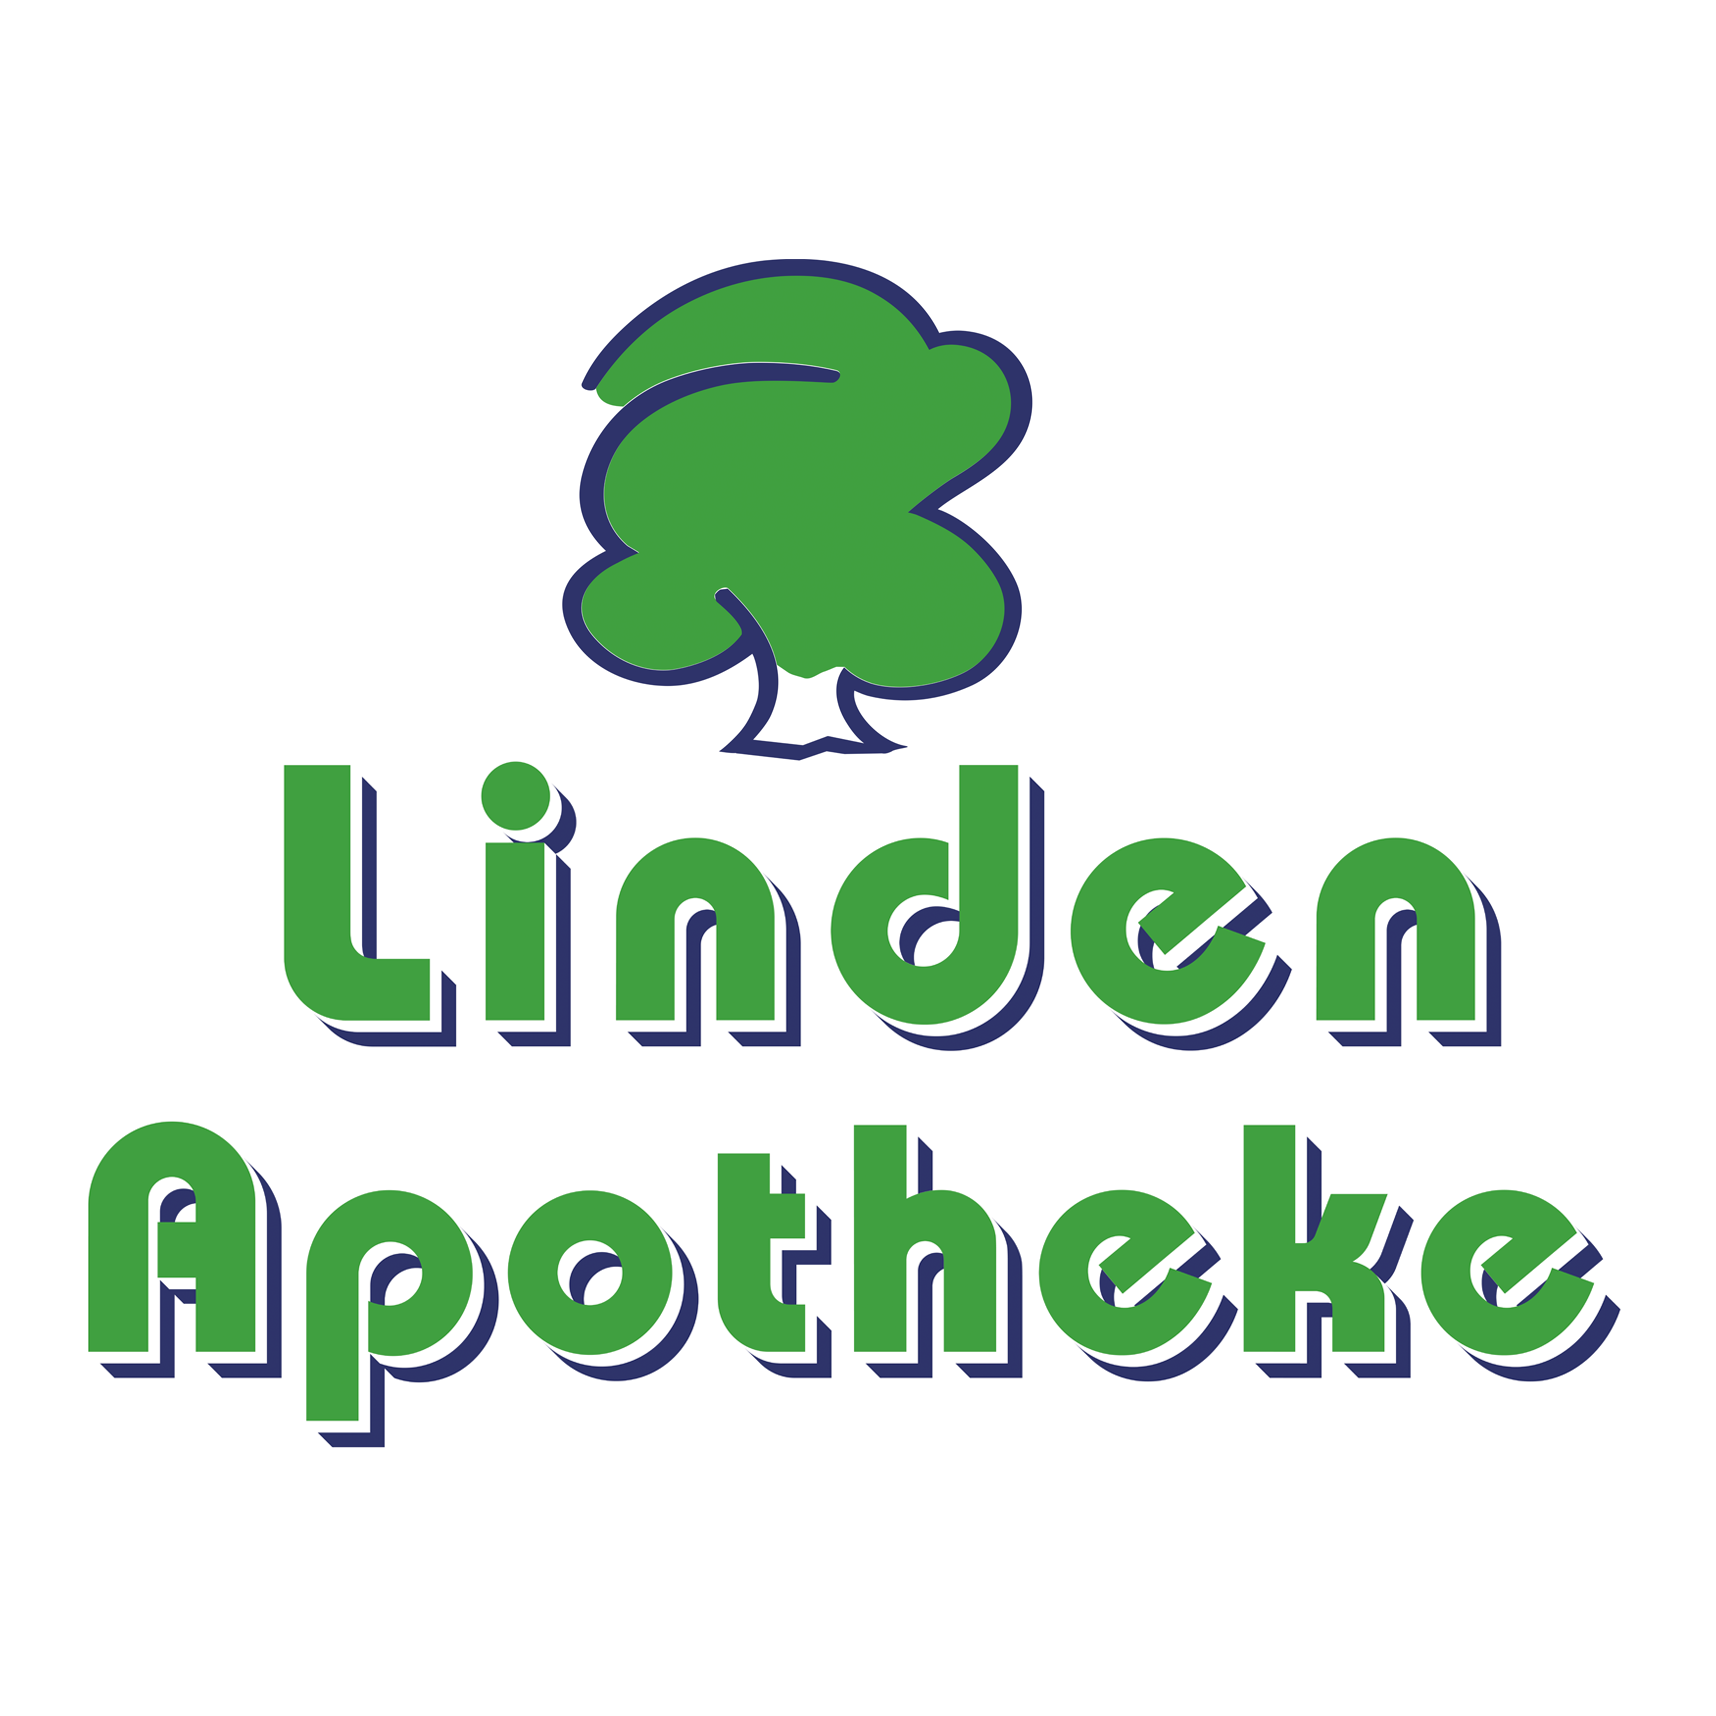 Logo Logo der Linden-Apotheke